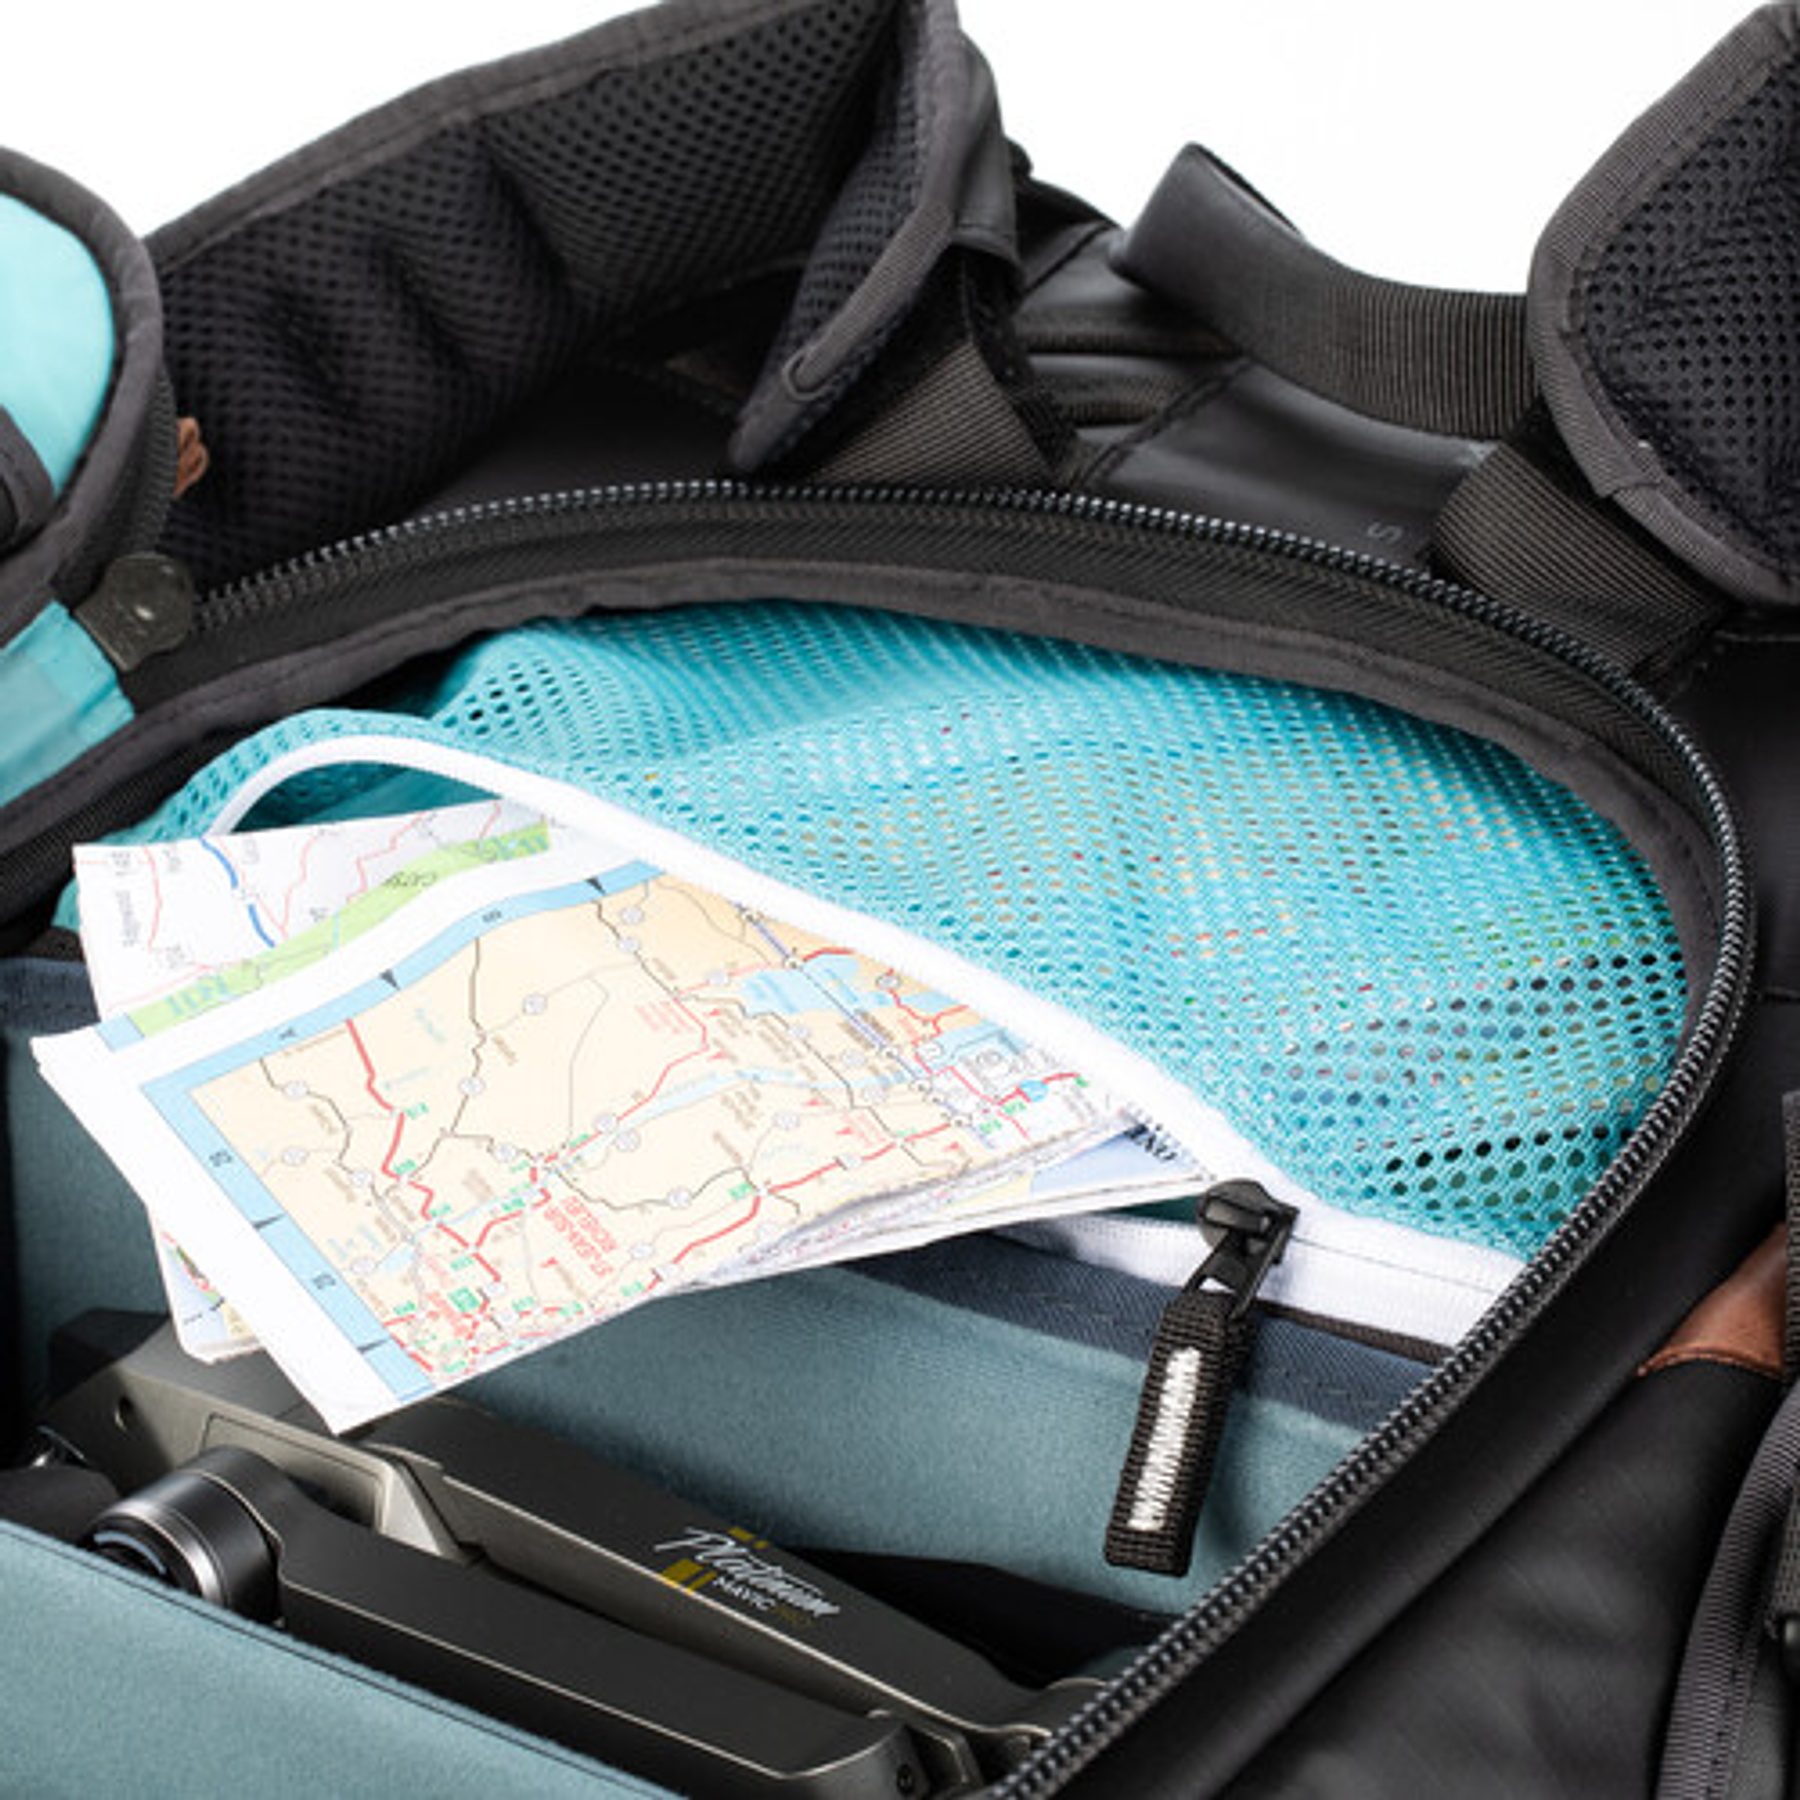 Shimoda Designs Explore v2 30 Backpack Starter Kit (negro)